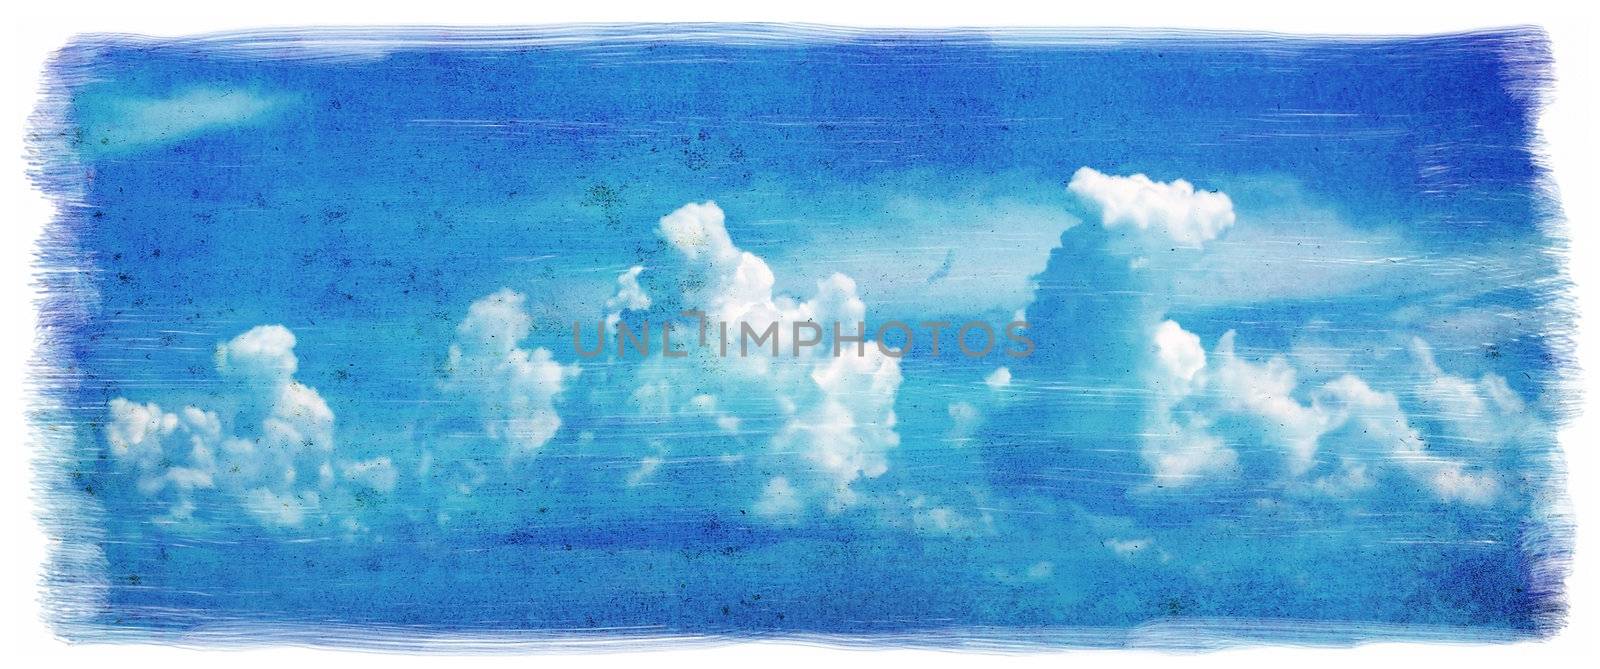 Grunge sky background by Anna_Omelchenko